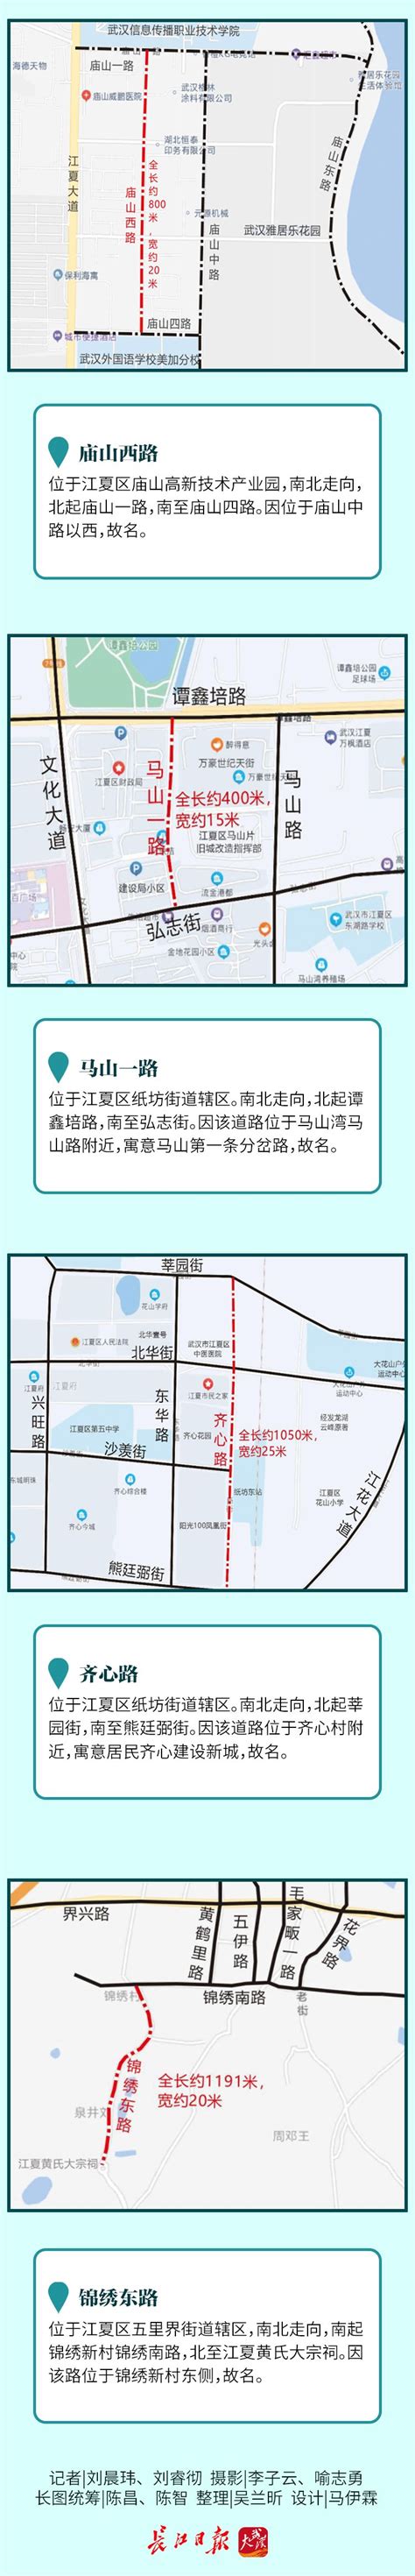 武汉市道路结构与商业集聚空间关联分析